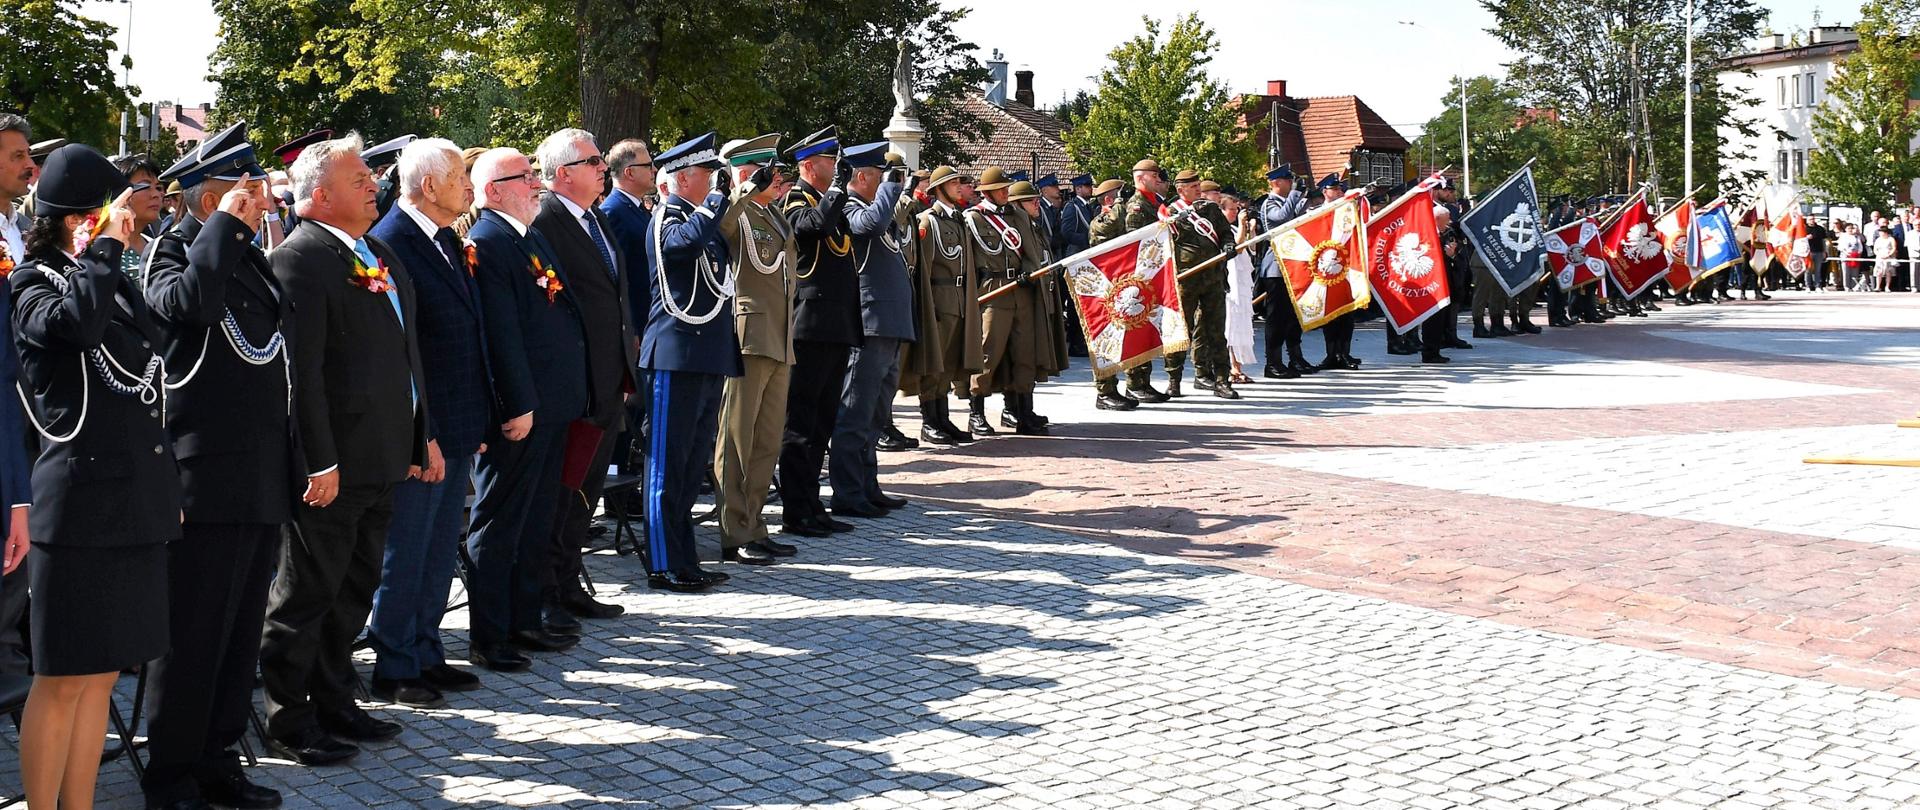 Na zdjęciu widzimy zgromadzone na placu służby mundurowe oraz władze państwowe oddające honory podczas Hymnu Państwowego.